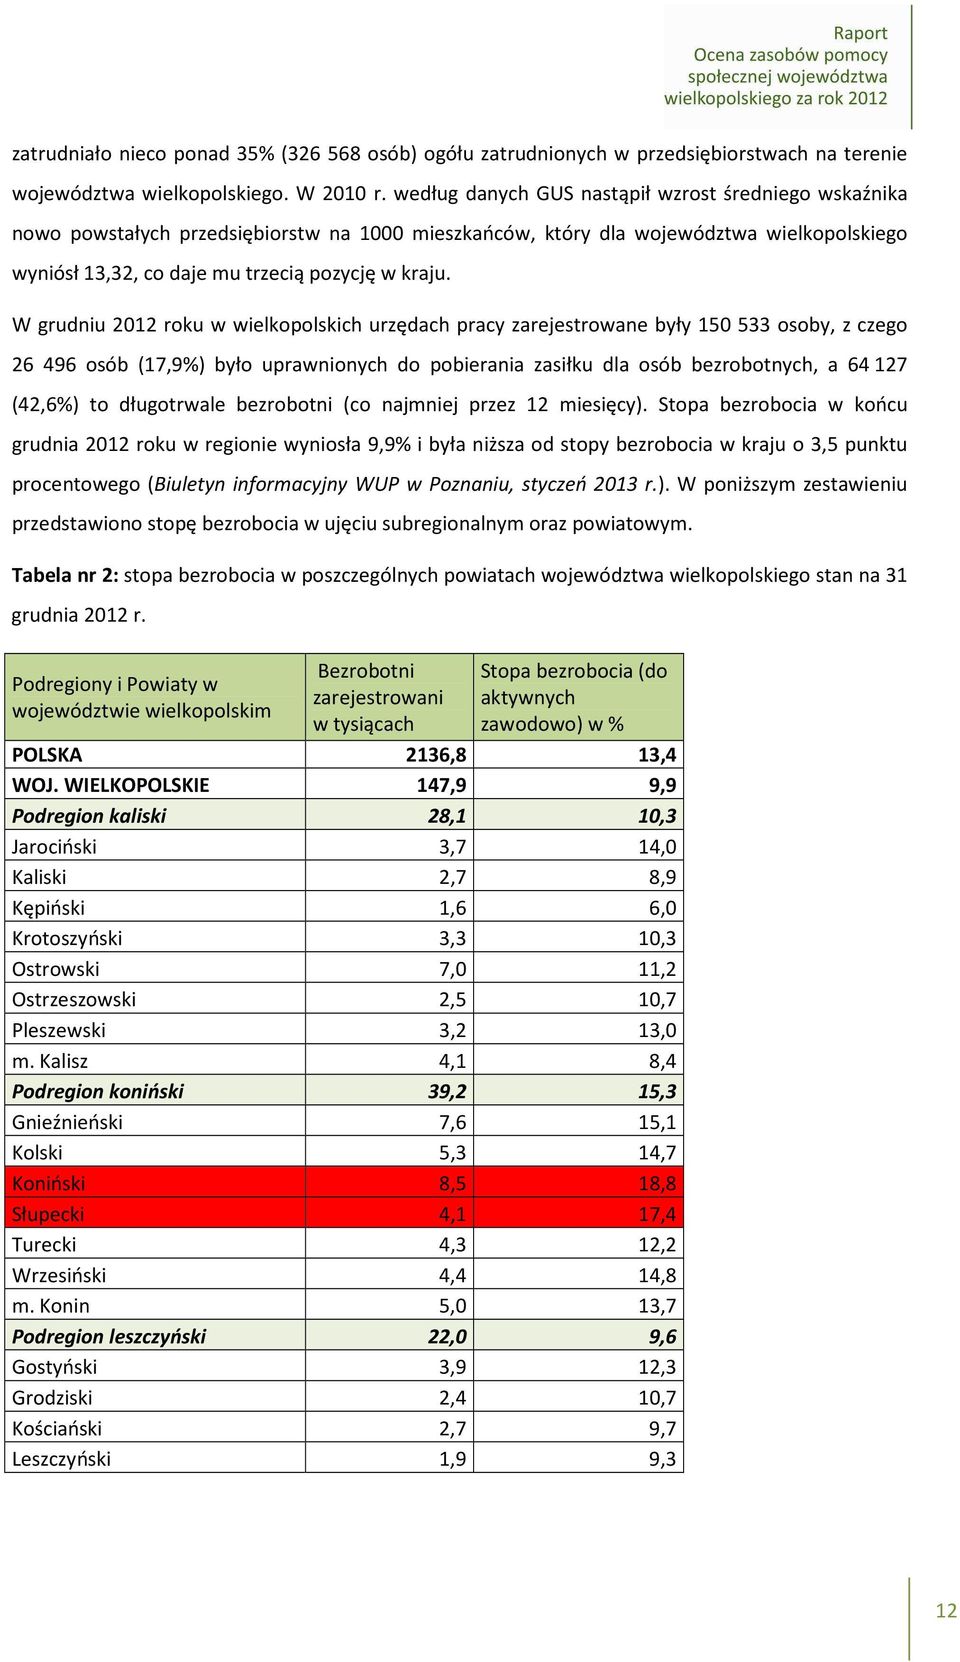 W grudniu 2012 roku w wielkopolskich urzędach pracy zarejestrowane były 150 533 osoby, z czego 26 496 osób (17,9%) było uprawnionych do pobierania zasiłku dla osób bezrobotnych, a 64127 (42,6%) to